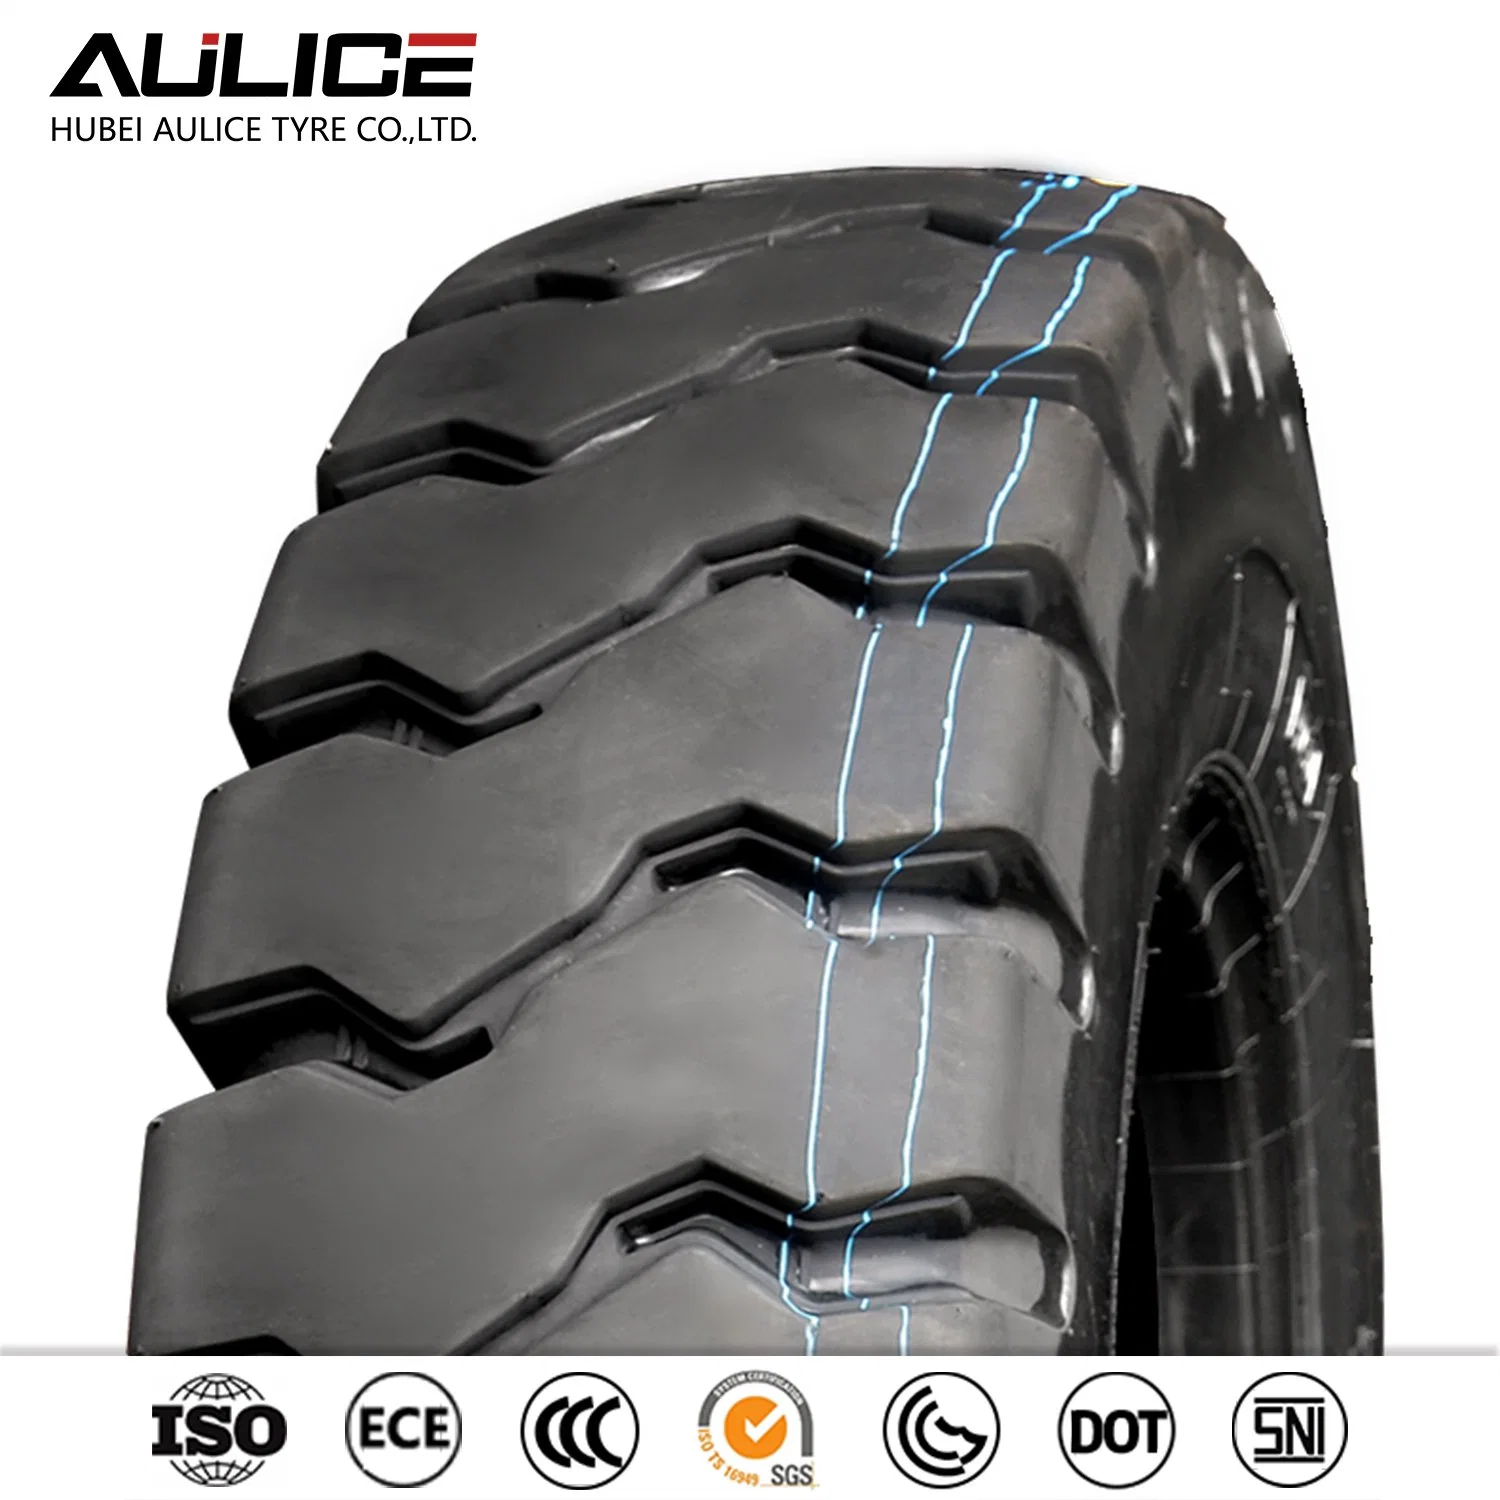 Pneus Aulice L-5 23.5-25 OTR pneus hors route Pneus Construction pneus exploitation minière pneus à vendre